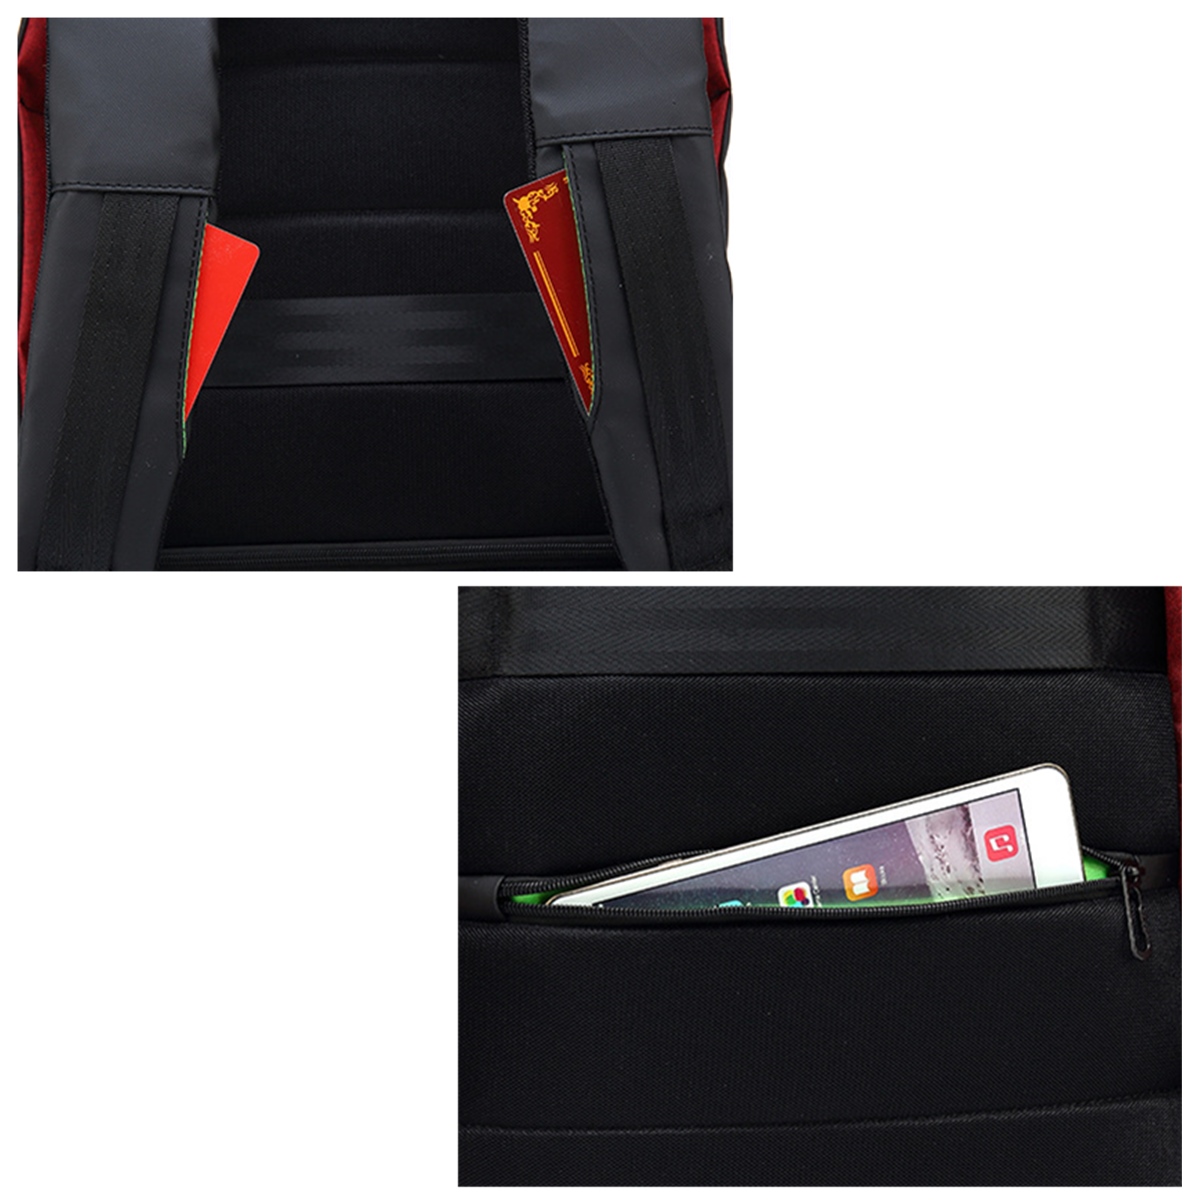 156-Inch-Laptop-Backpack-Bag-Travel-Bag-Student-Bag-With-External-USB-Charging-Port-1288885-7